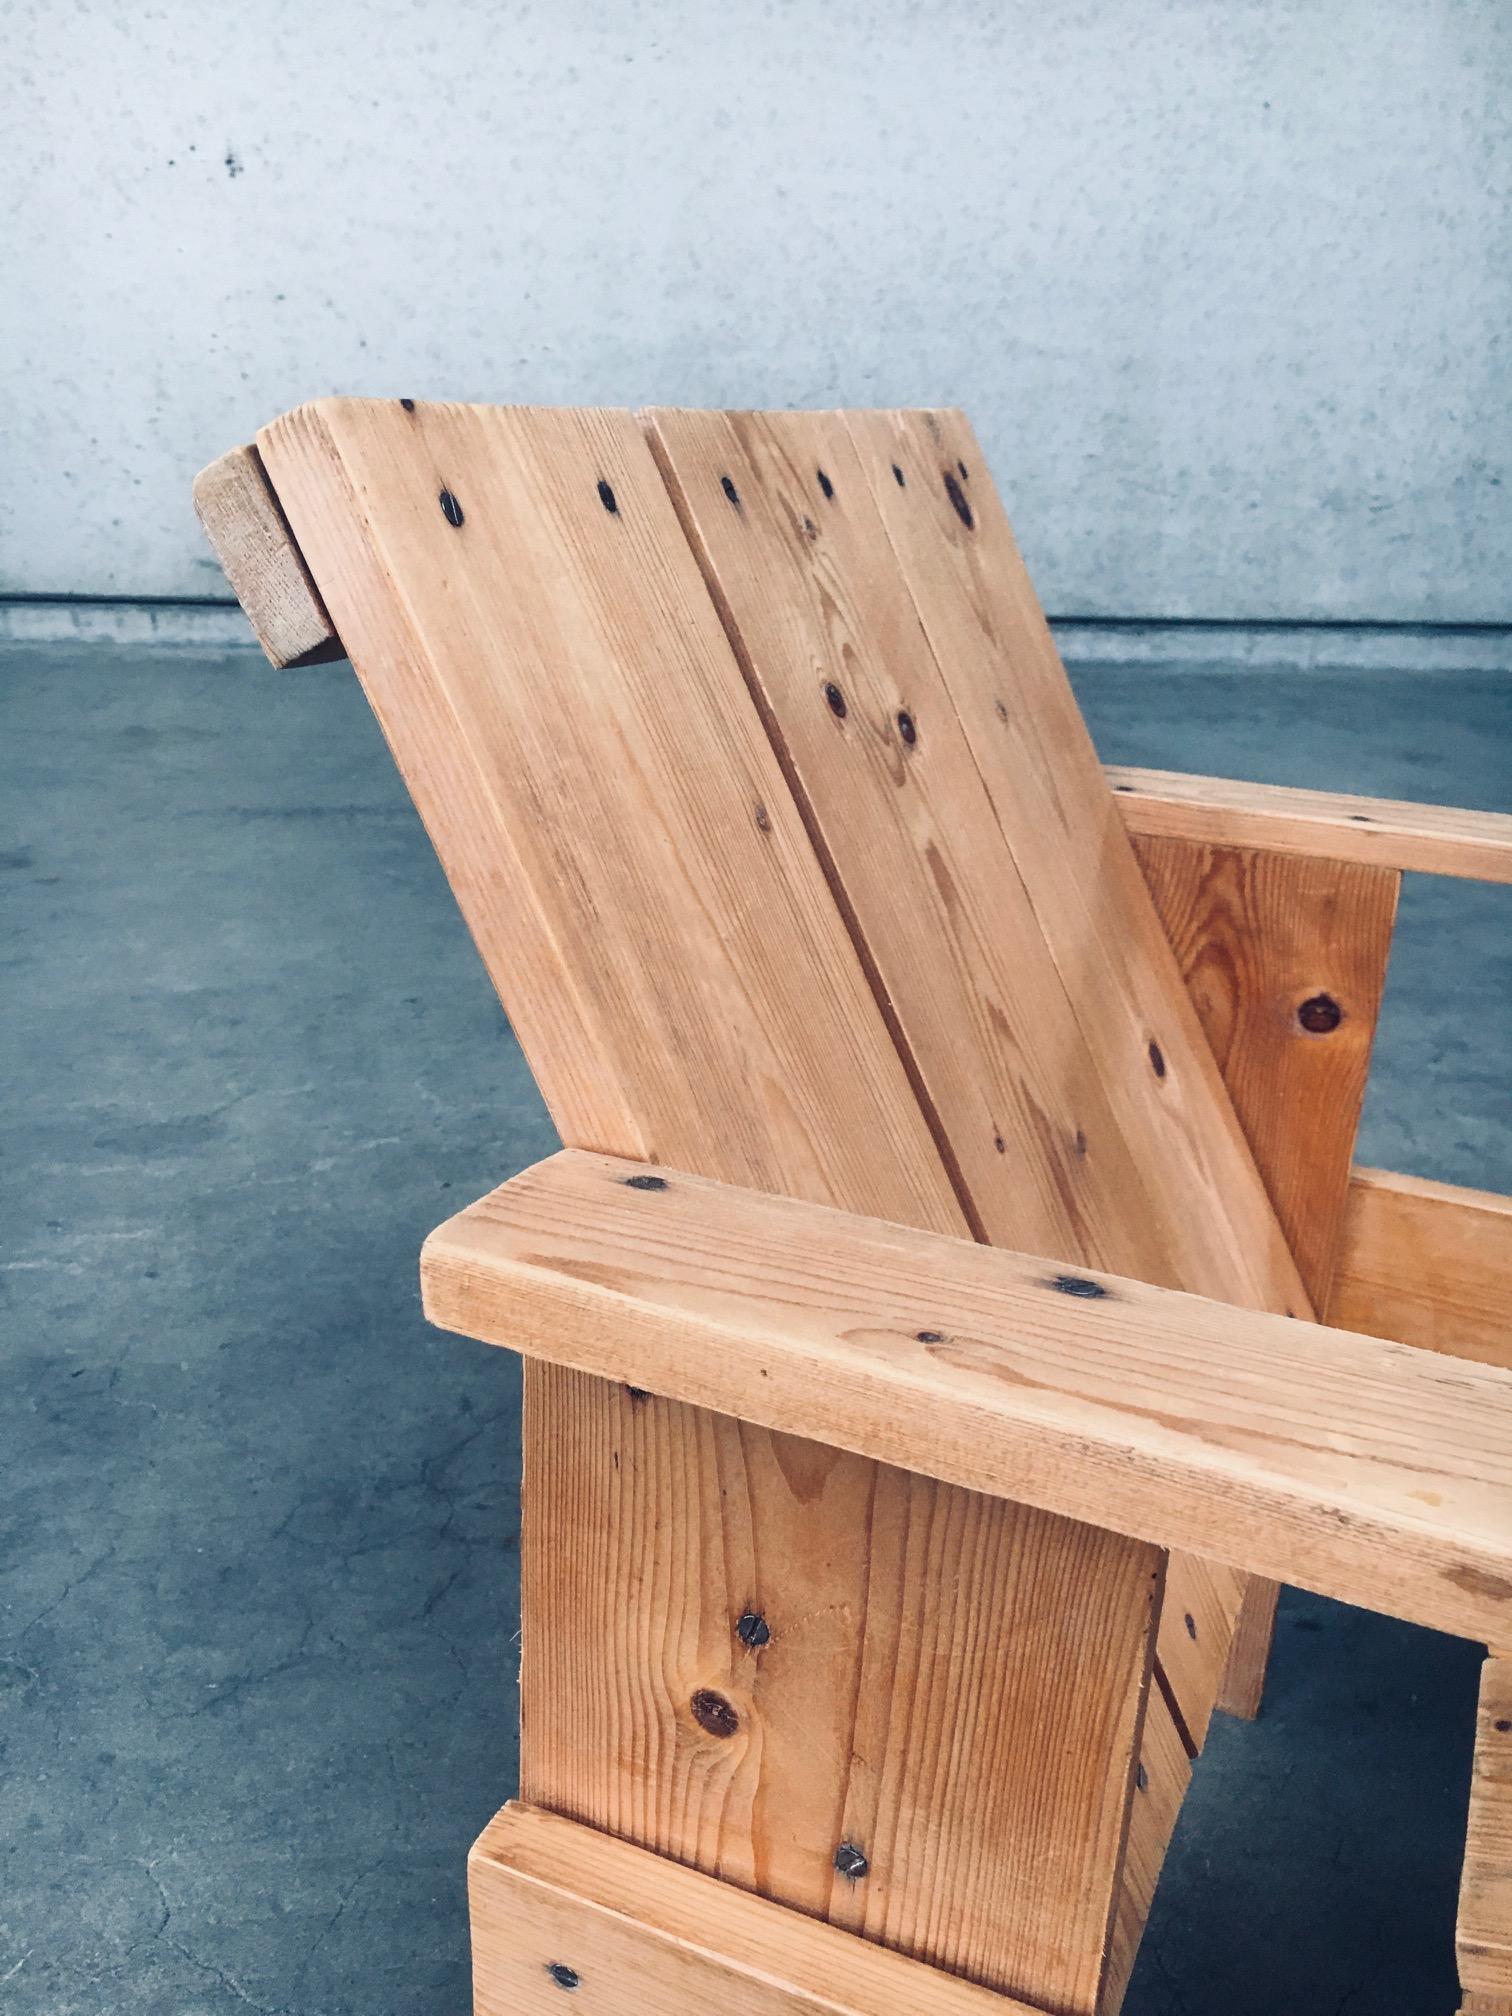 De Stijl Movement Dutch Design Pine CRATE Chair by Gerrit Rietveld For Sale 13